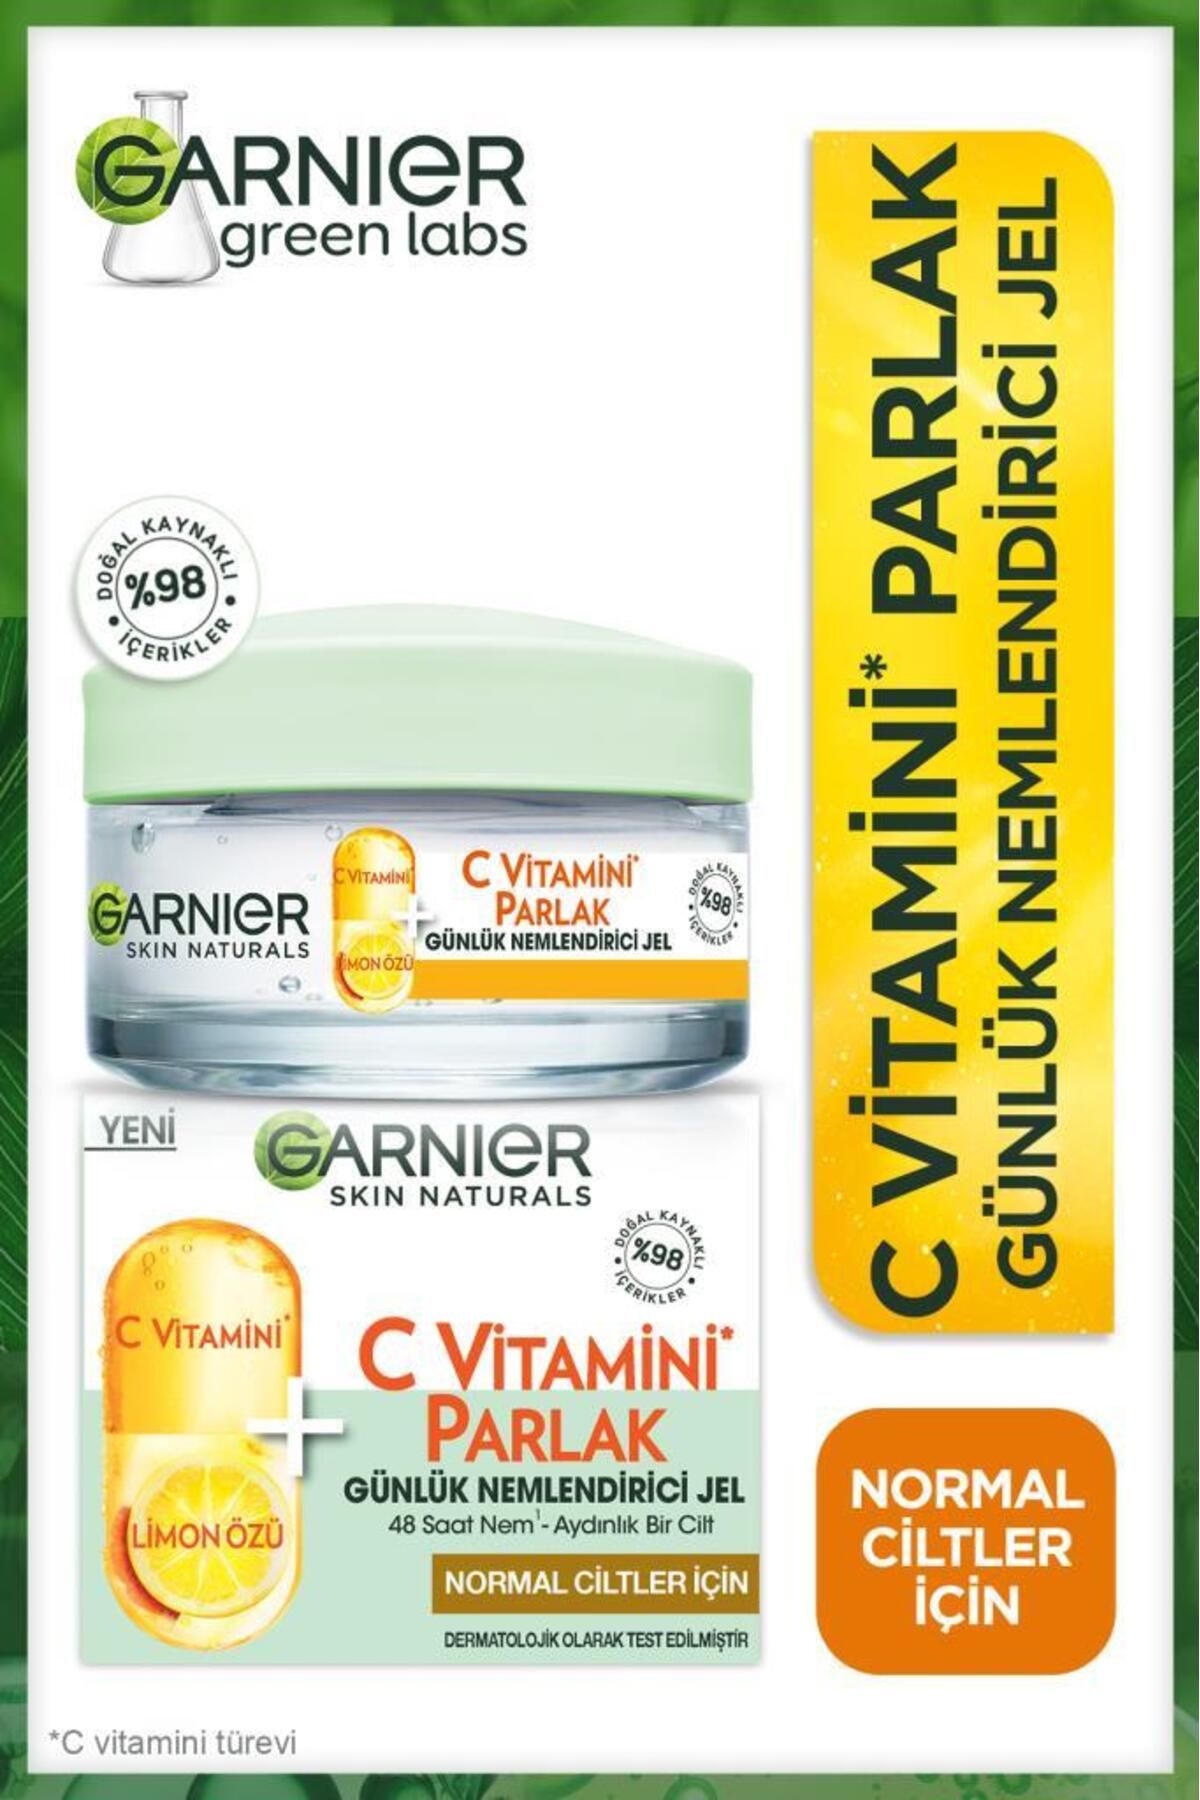 Garnier C Vitamini Parlak Günlük Nemlendirici Jel 50ml